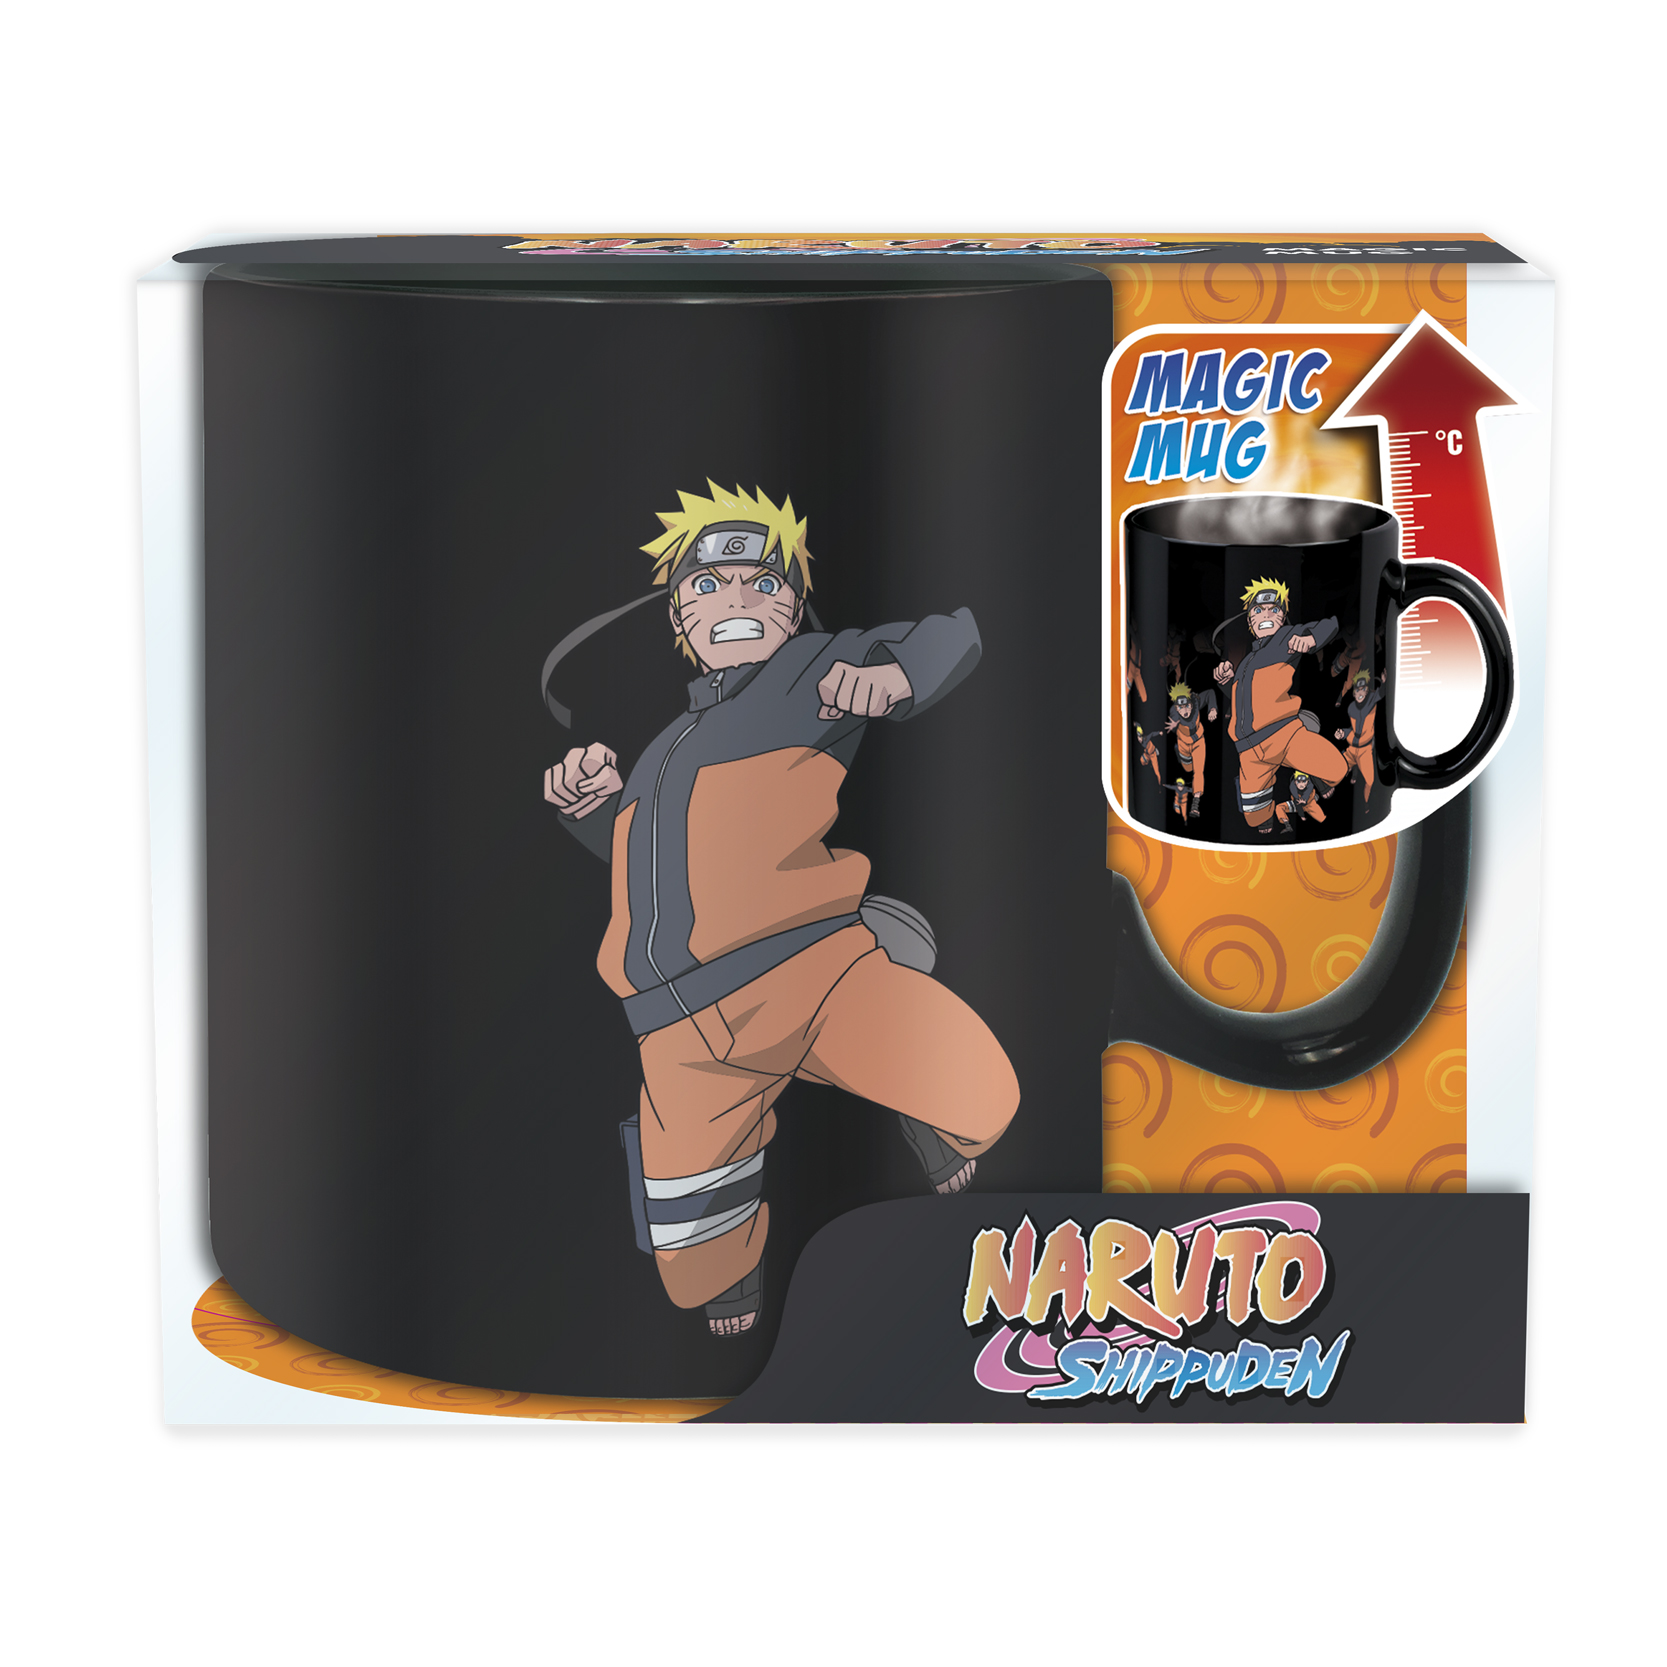 Naruto Shippuden Magische Tasse Magic Mug 